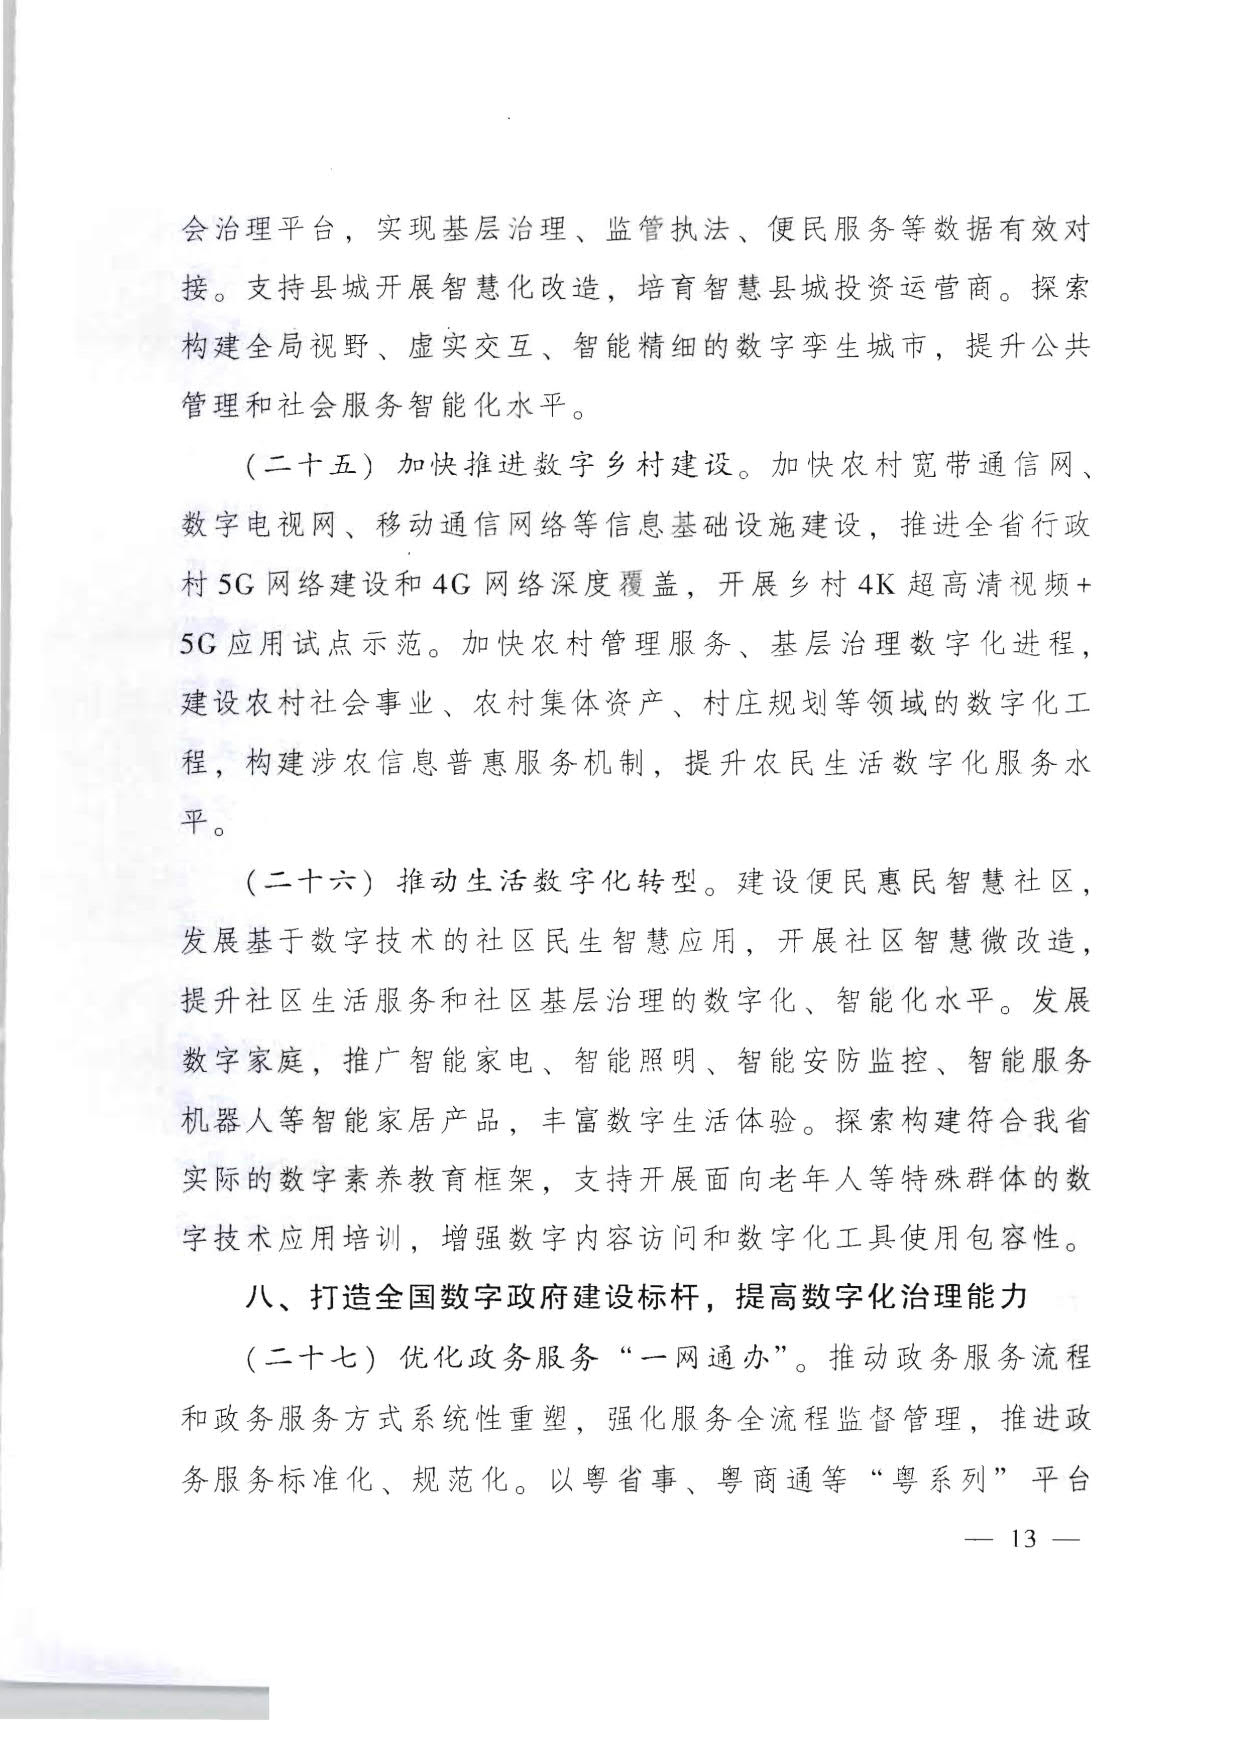 广东省人民政府关于加快数字化发展的意见_13.jpg